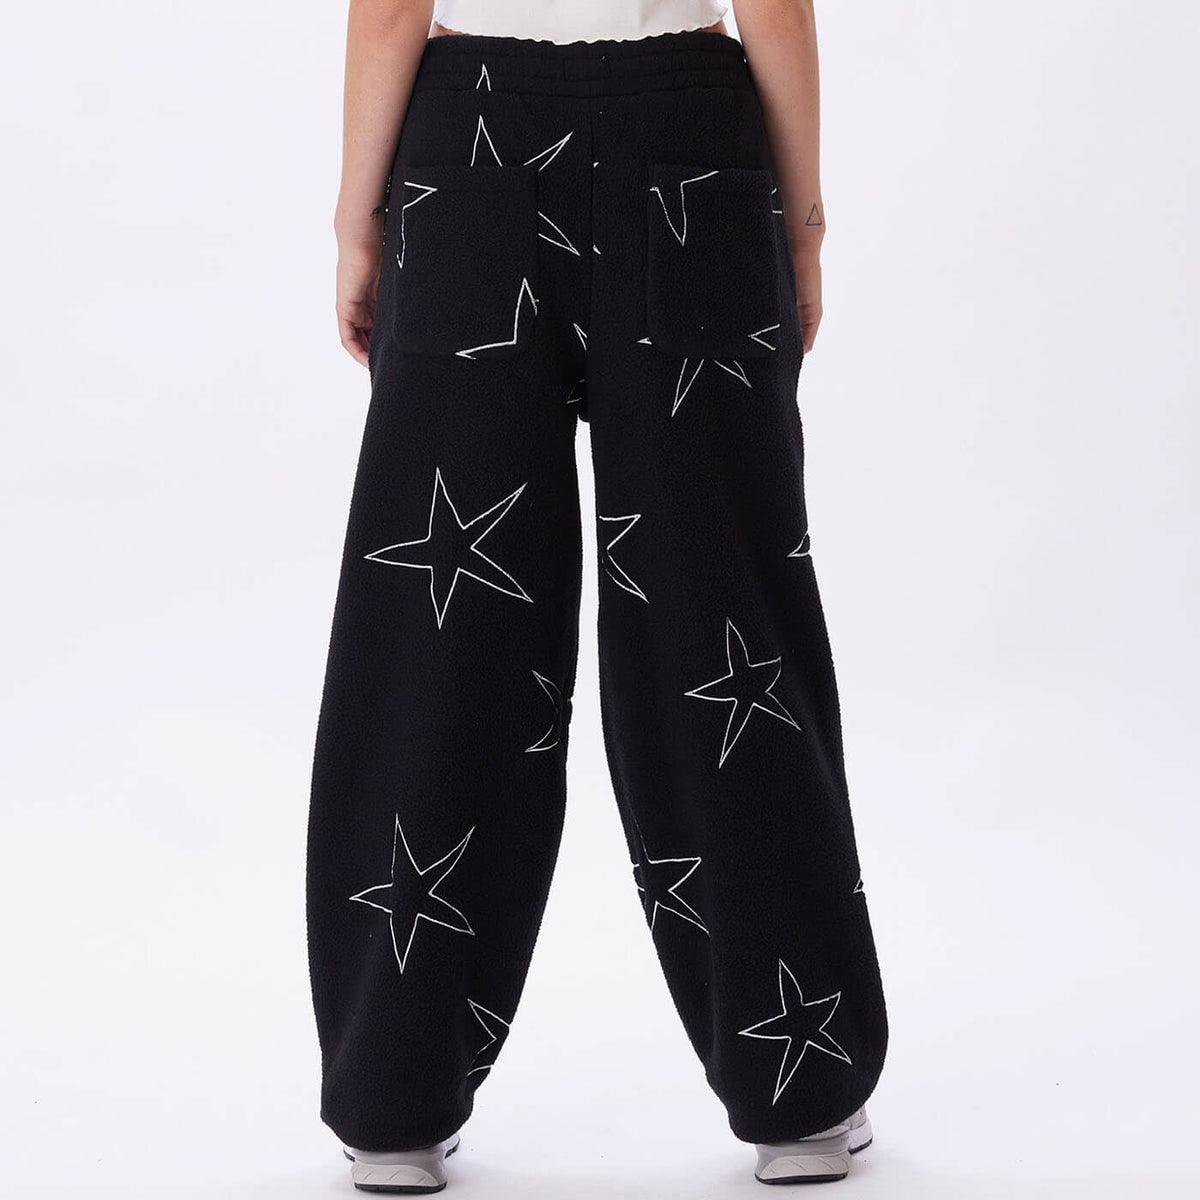 OBEY - Stargaze Women's Pants, Black